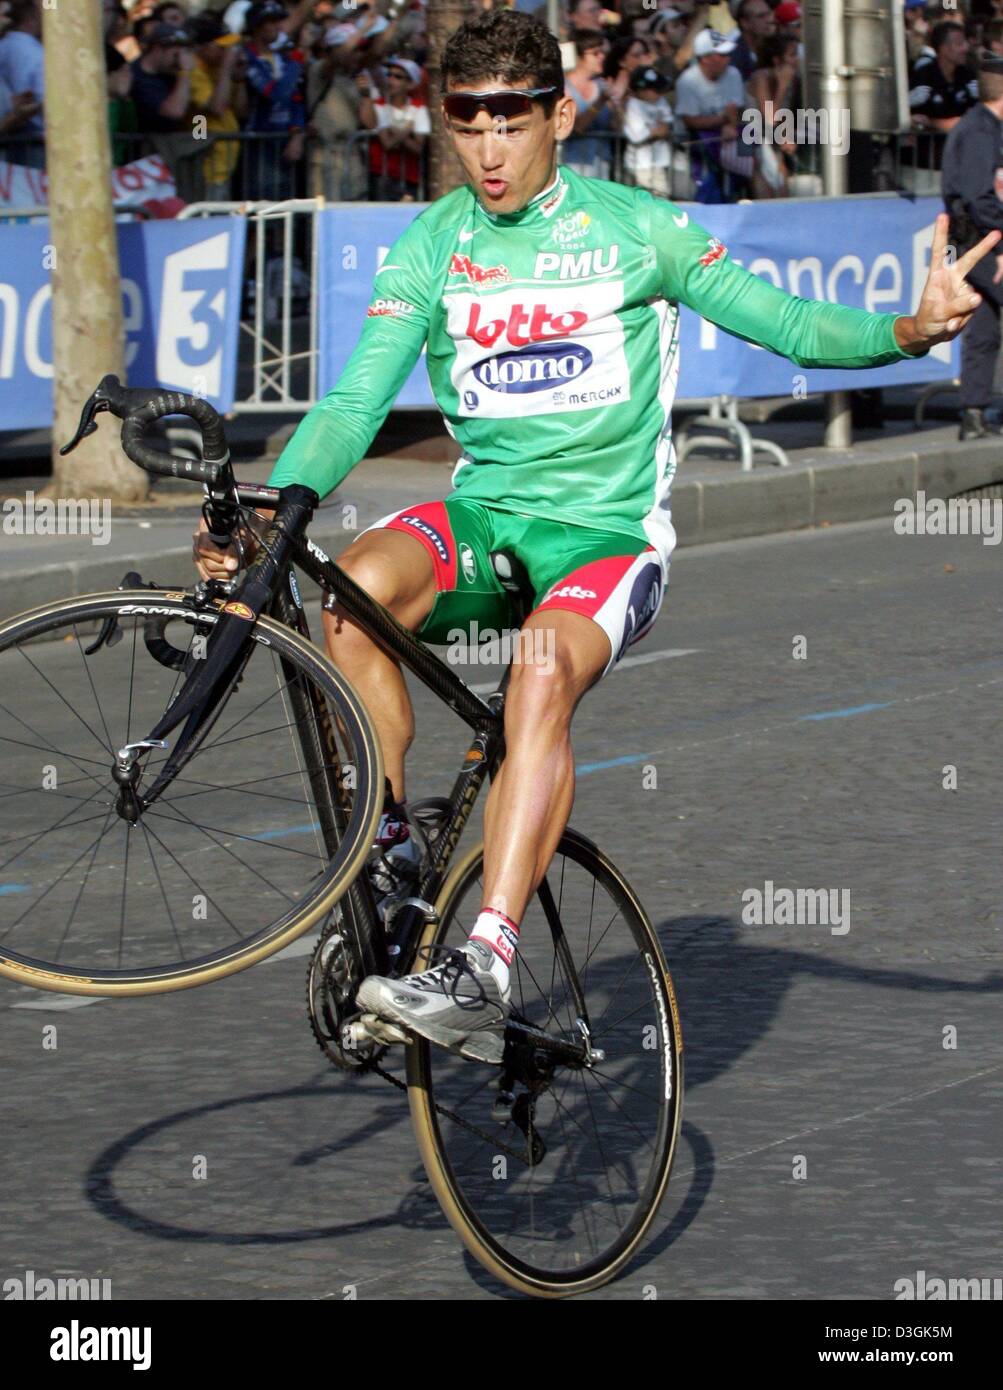 Afp) - coureur cycliste australien Robbie McEwen de l'équipe Lotto-Domo  célèbre remportant le maillot vert du meilleur sprinter avec un wheelie  après la fin de la dernière étape du Tour de France